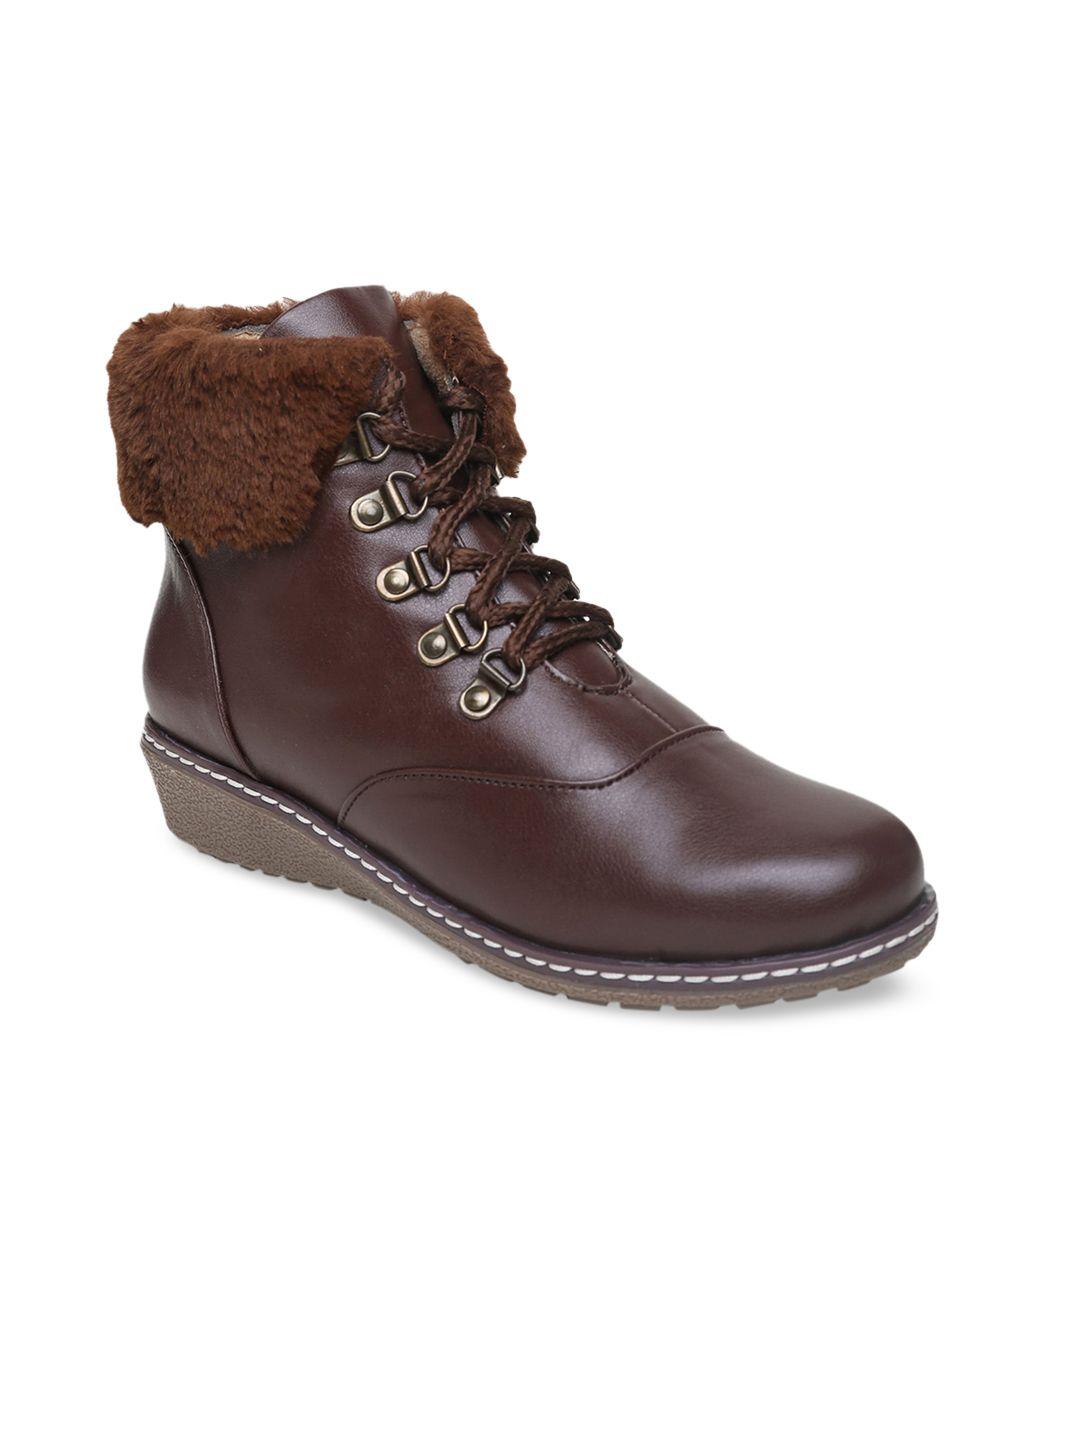 valiosaa brown wedge heeled boots